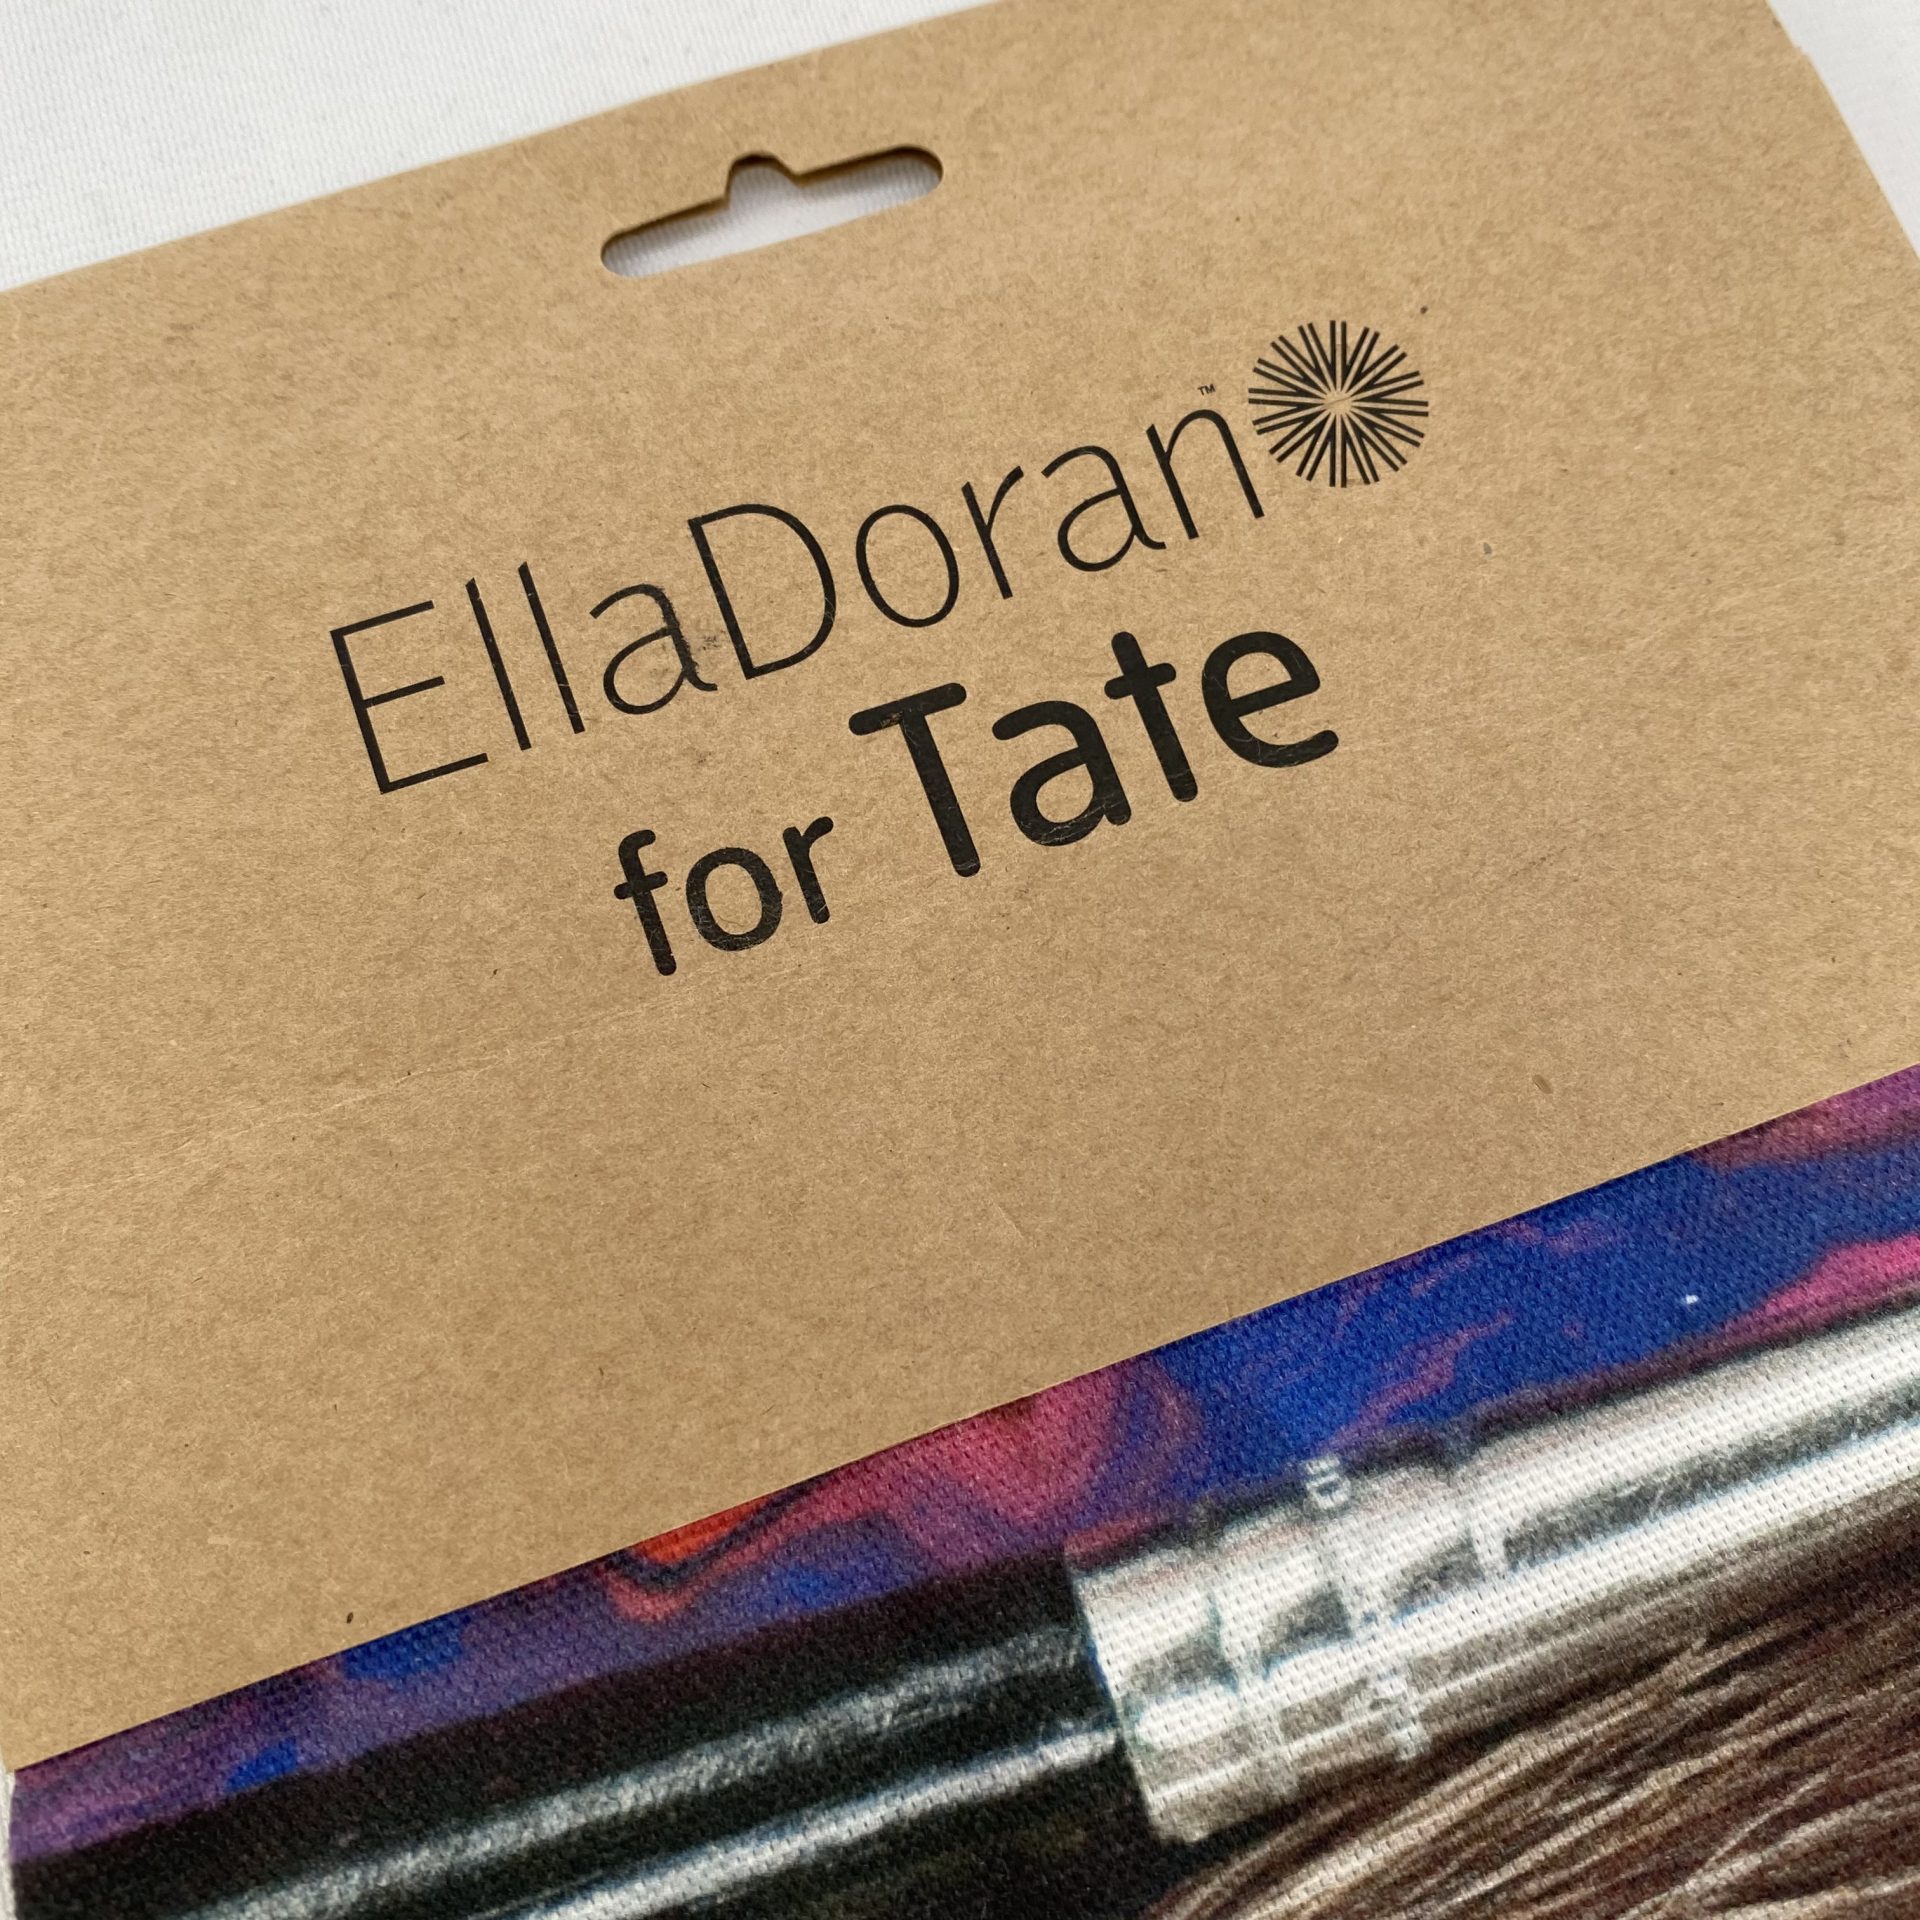 Ella Doran Paint Brushes Bespoke Printed Tea Towel